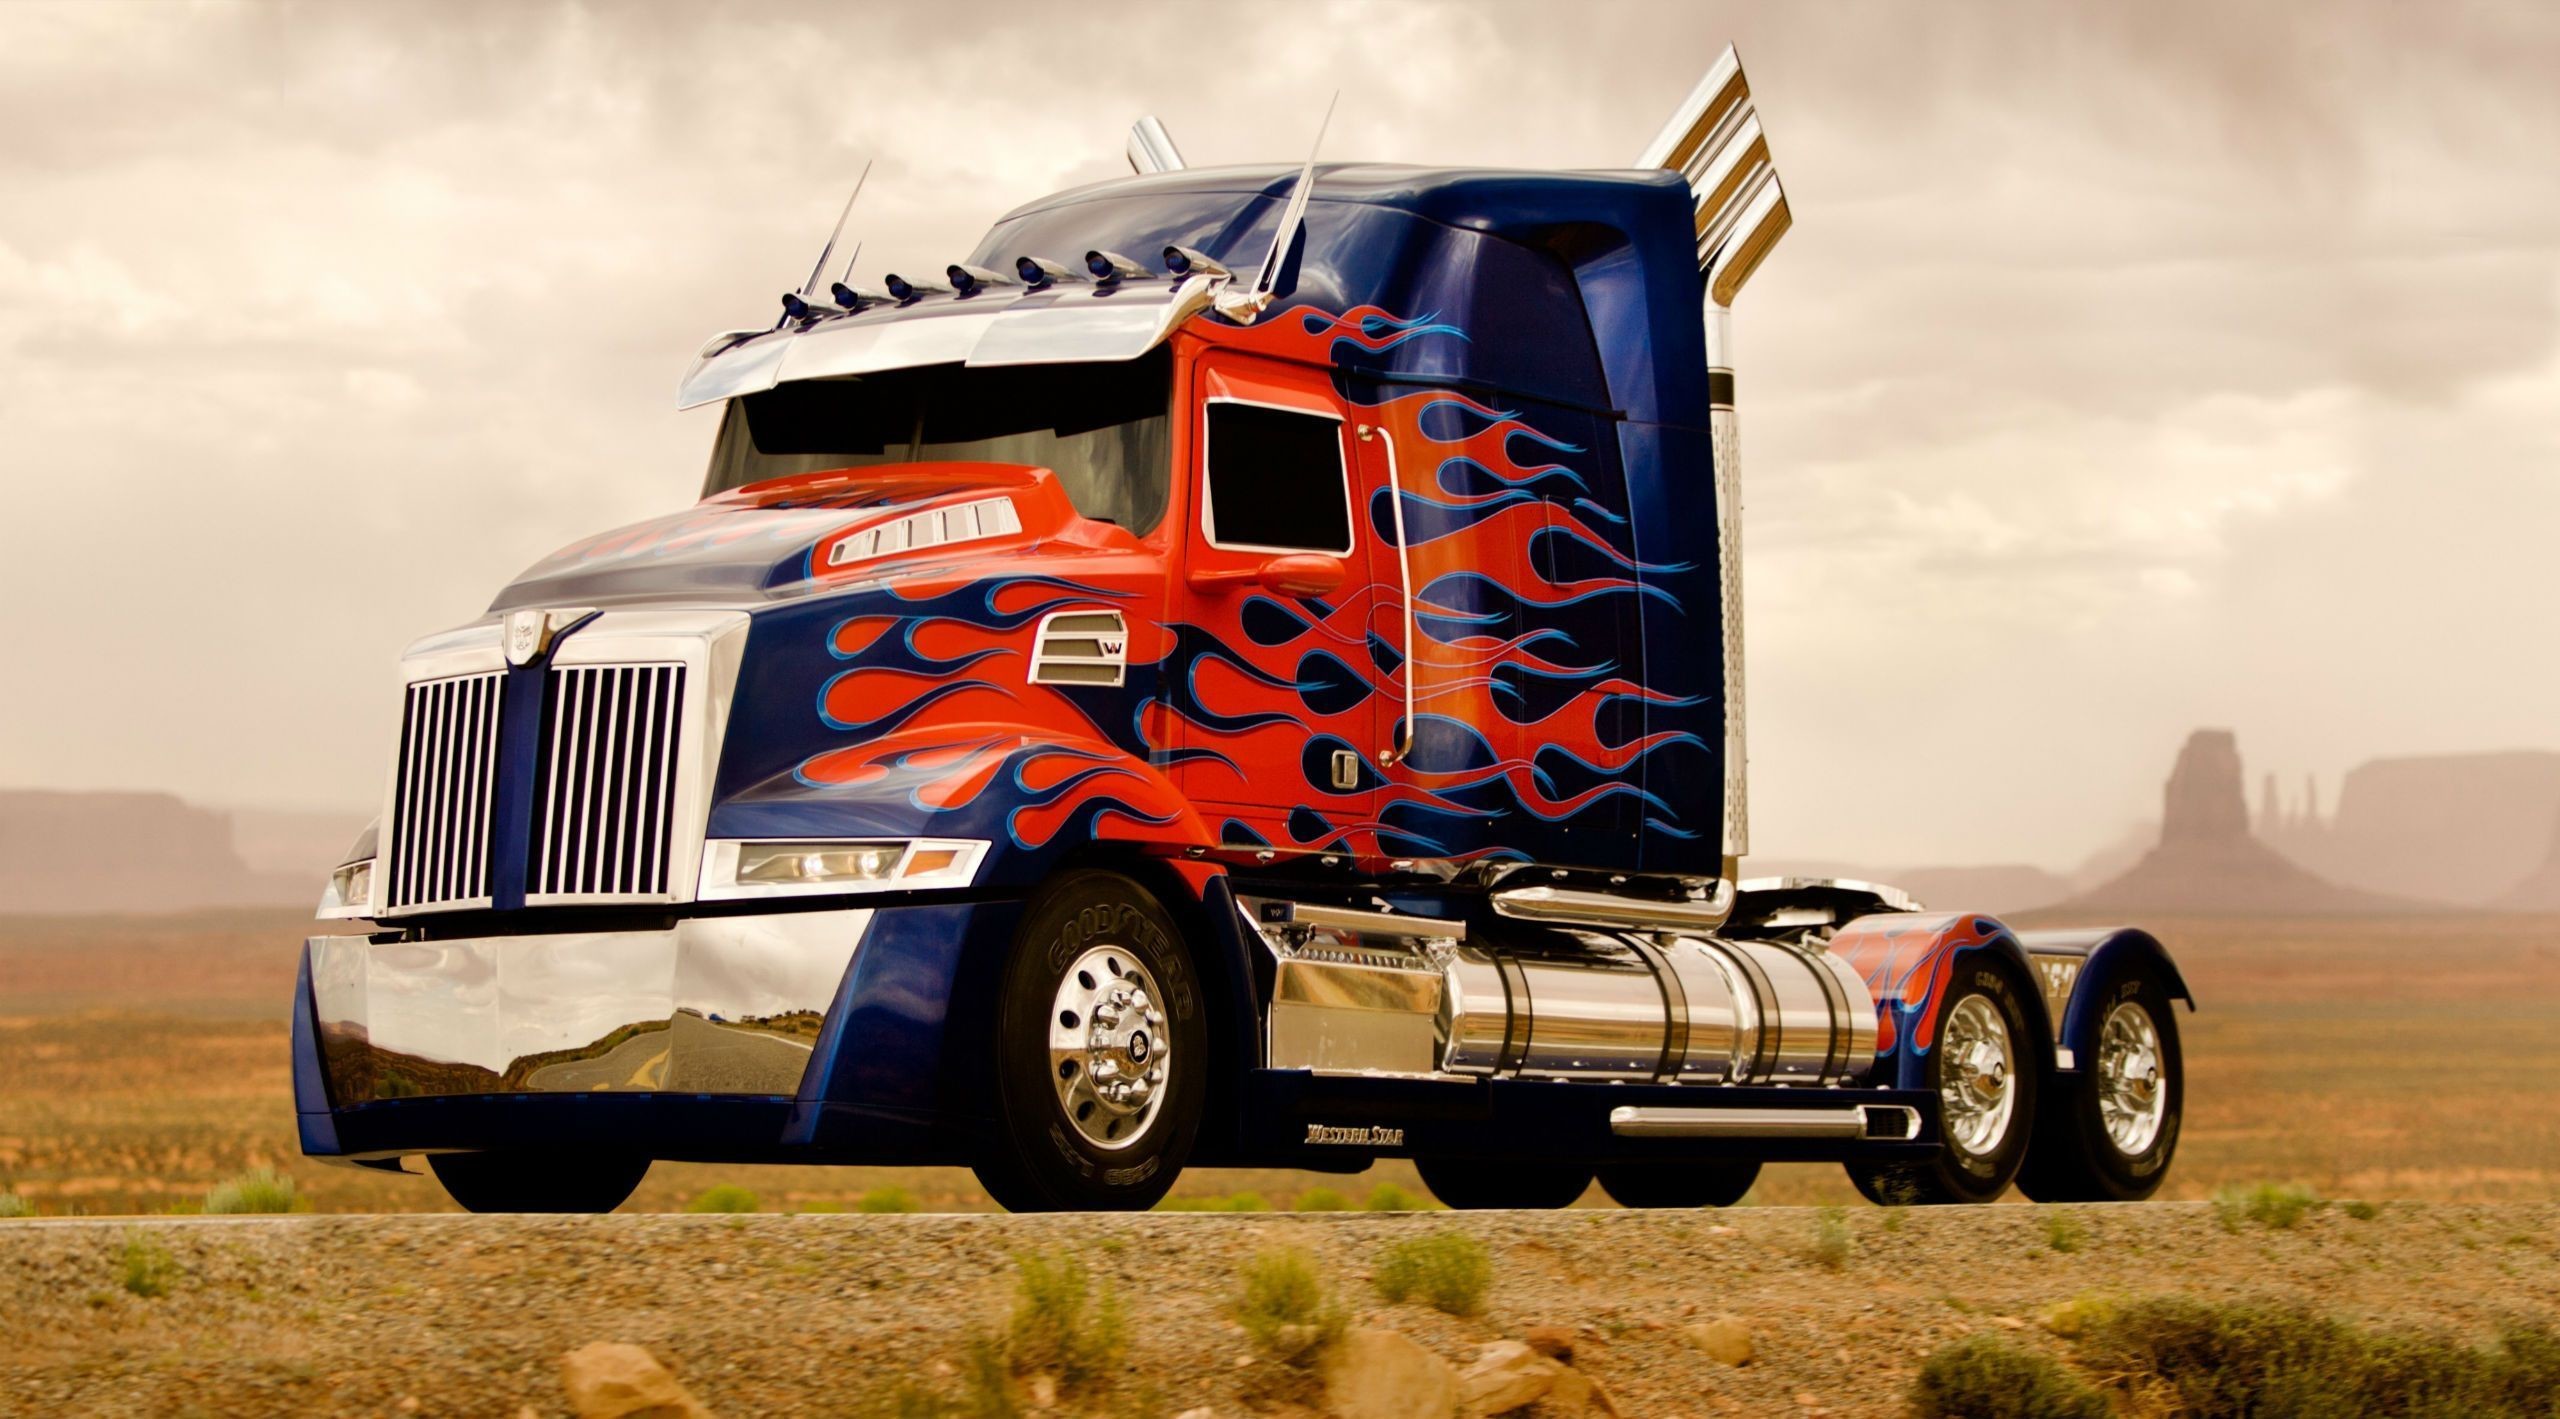 2560x1419 Transformers Trucks Movies mecha semi tractor truck wallpaper .